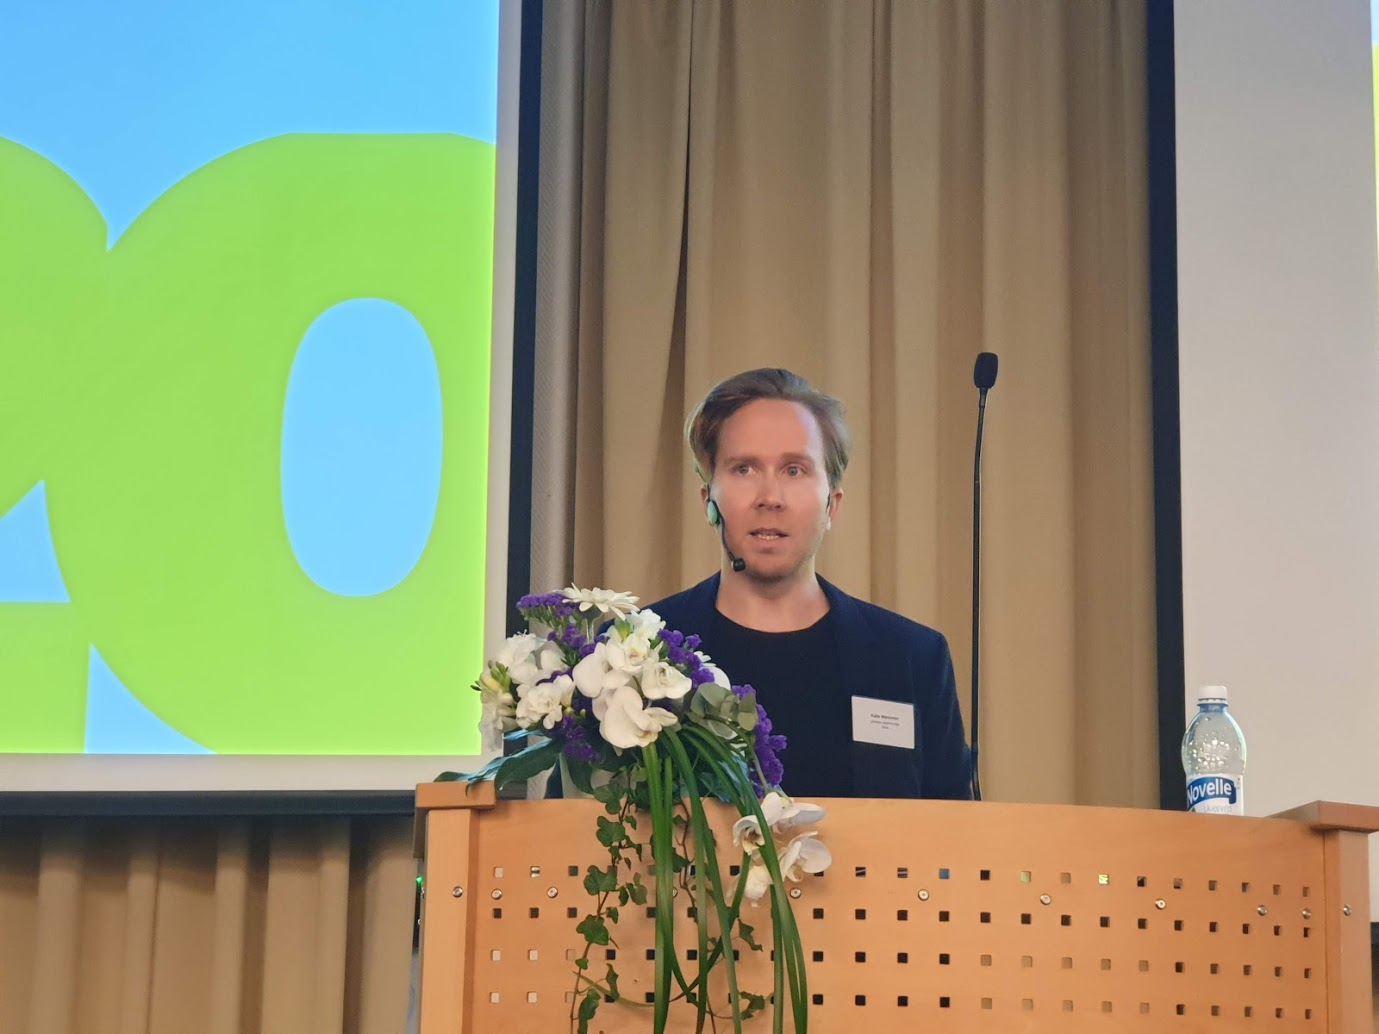 Johtava asiantuntija Kalle Nieminen Sitrasta puhumassa seminaarissa